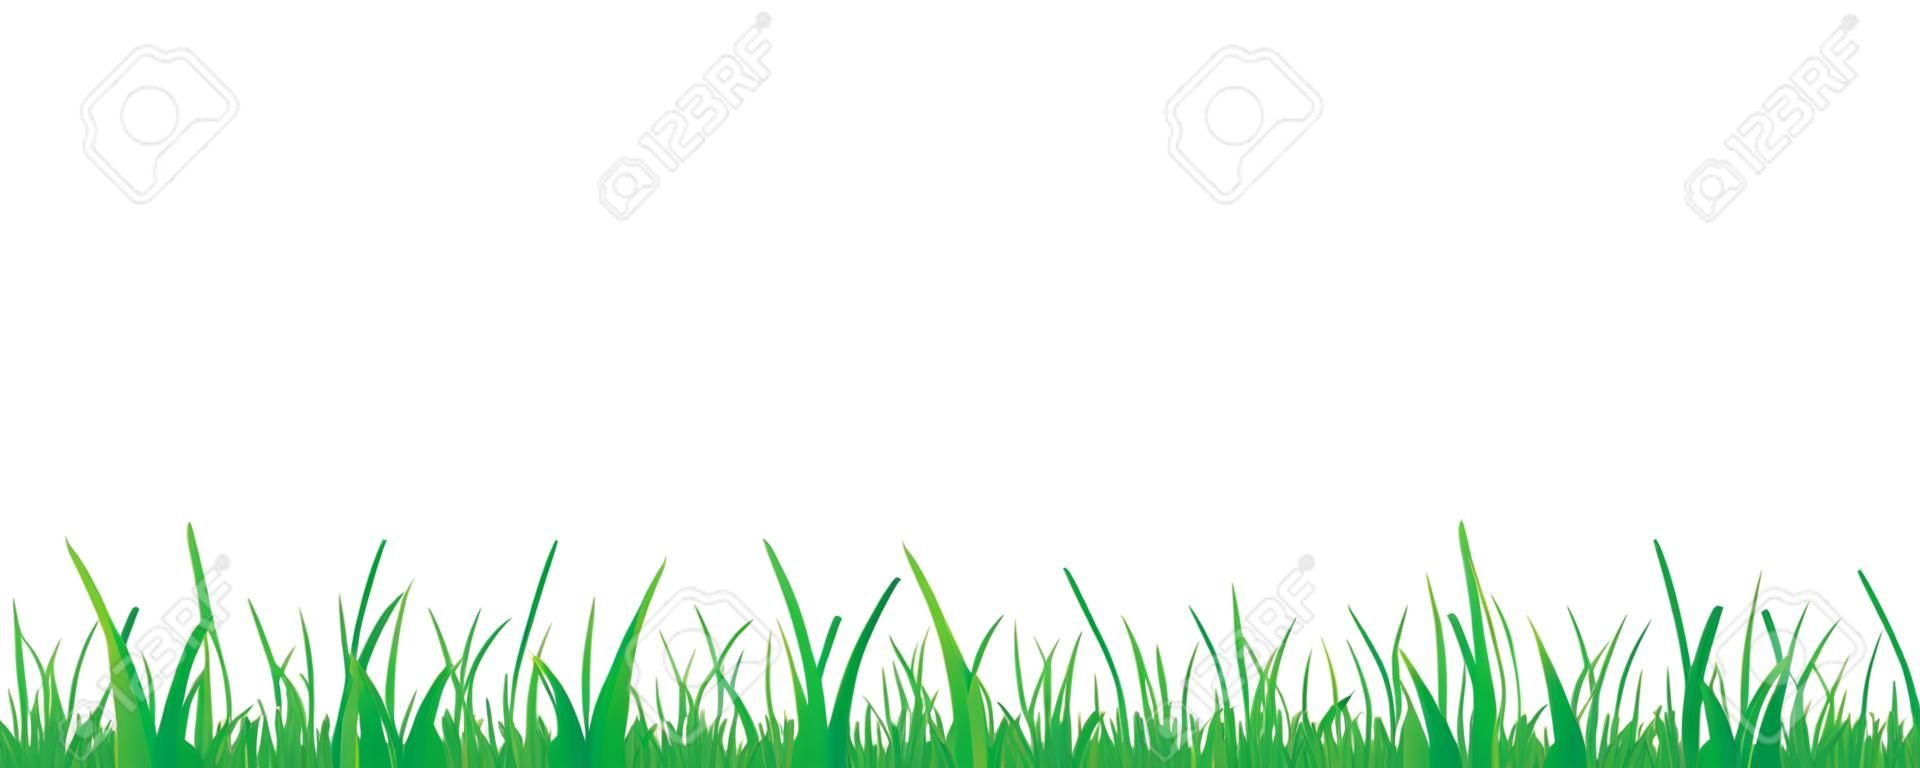 grama verde prado fronteira vector padrão isoladet em um fundo branco vector ilustração EPS10